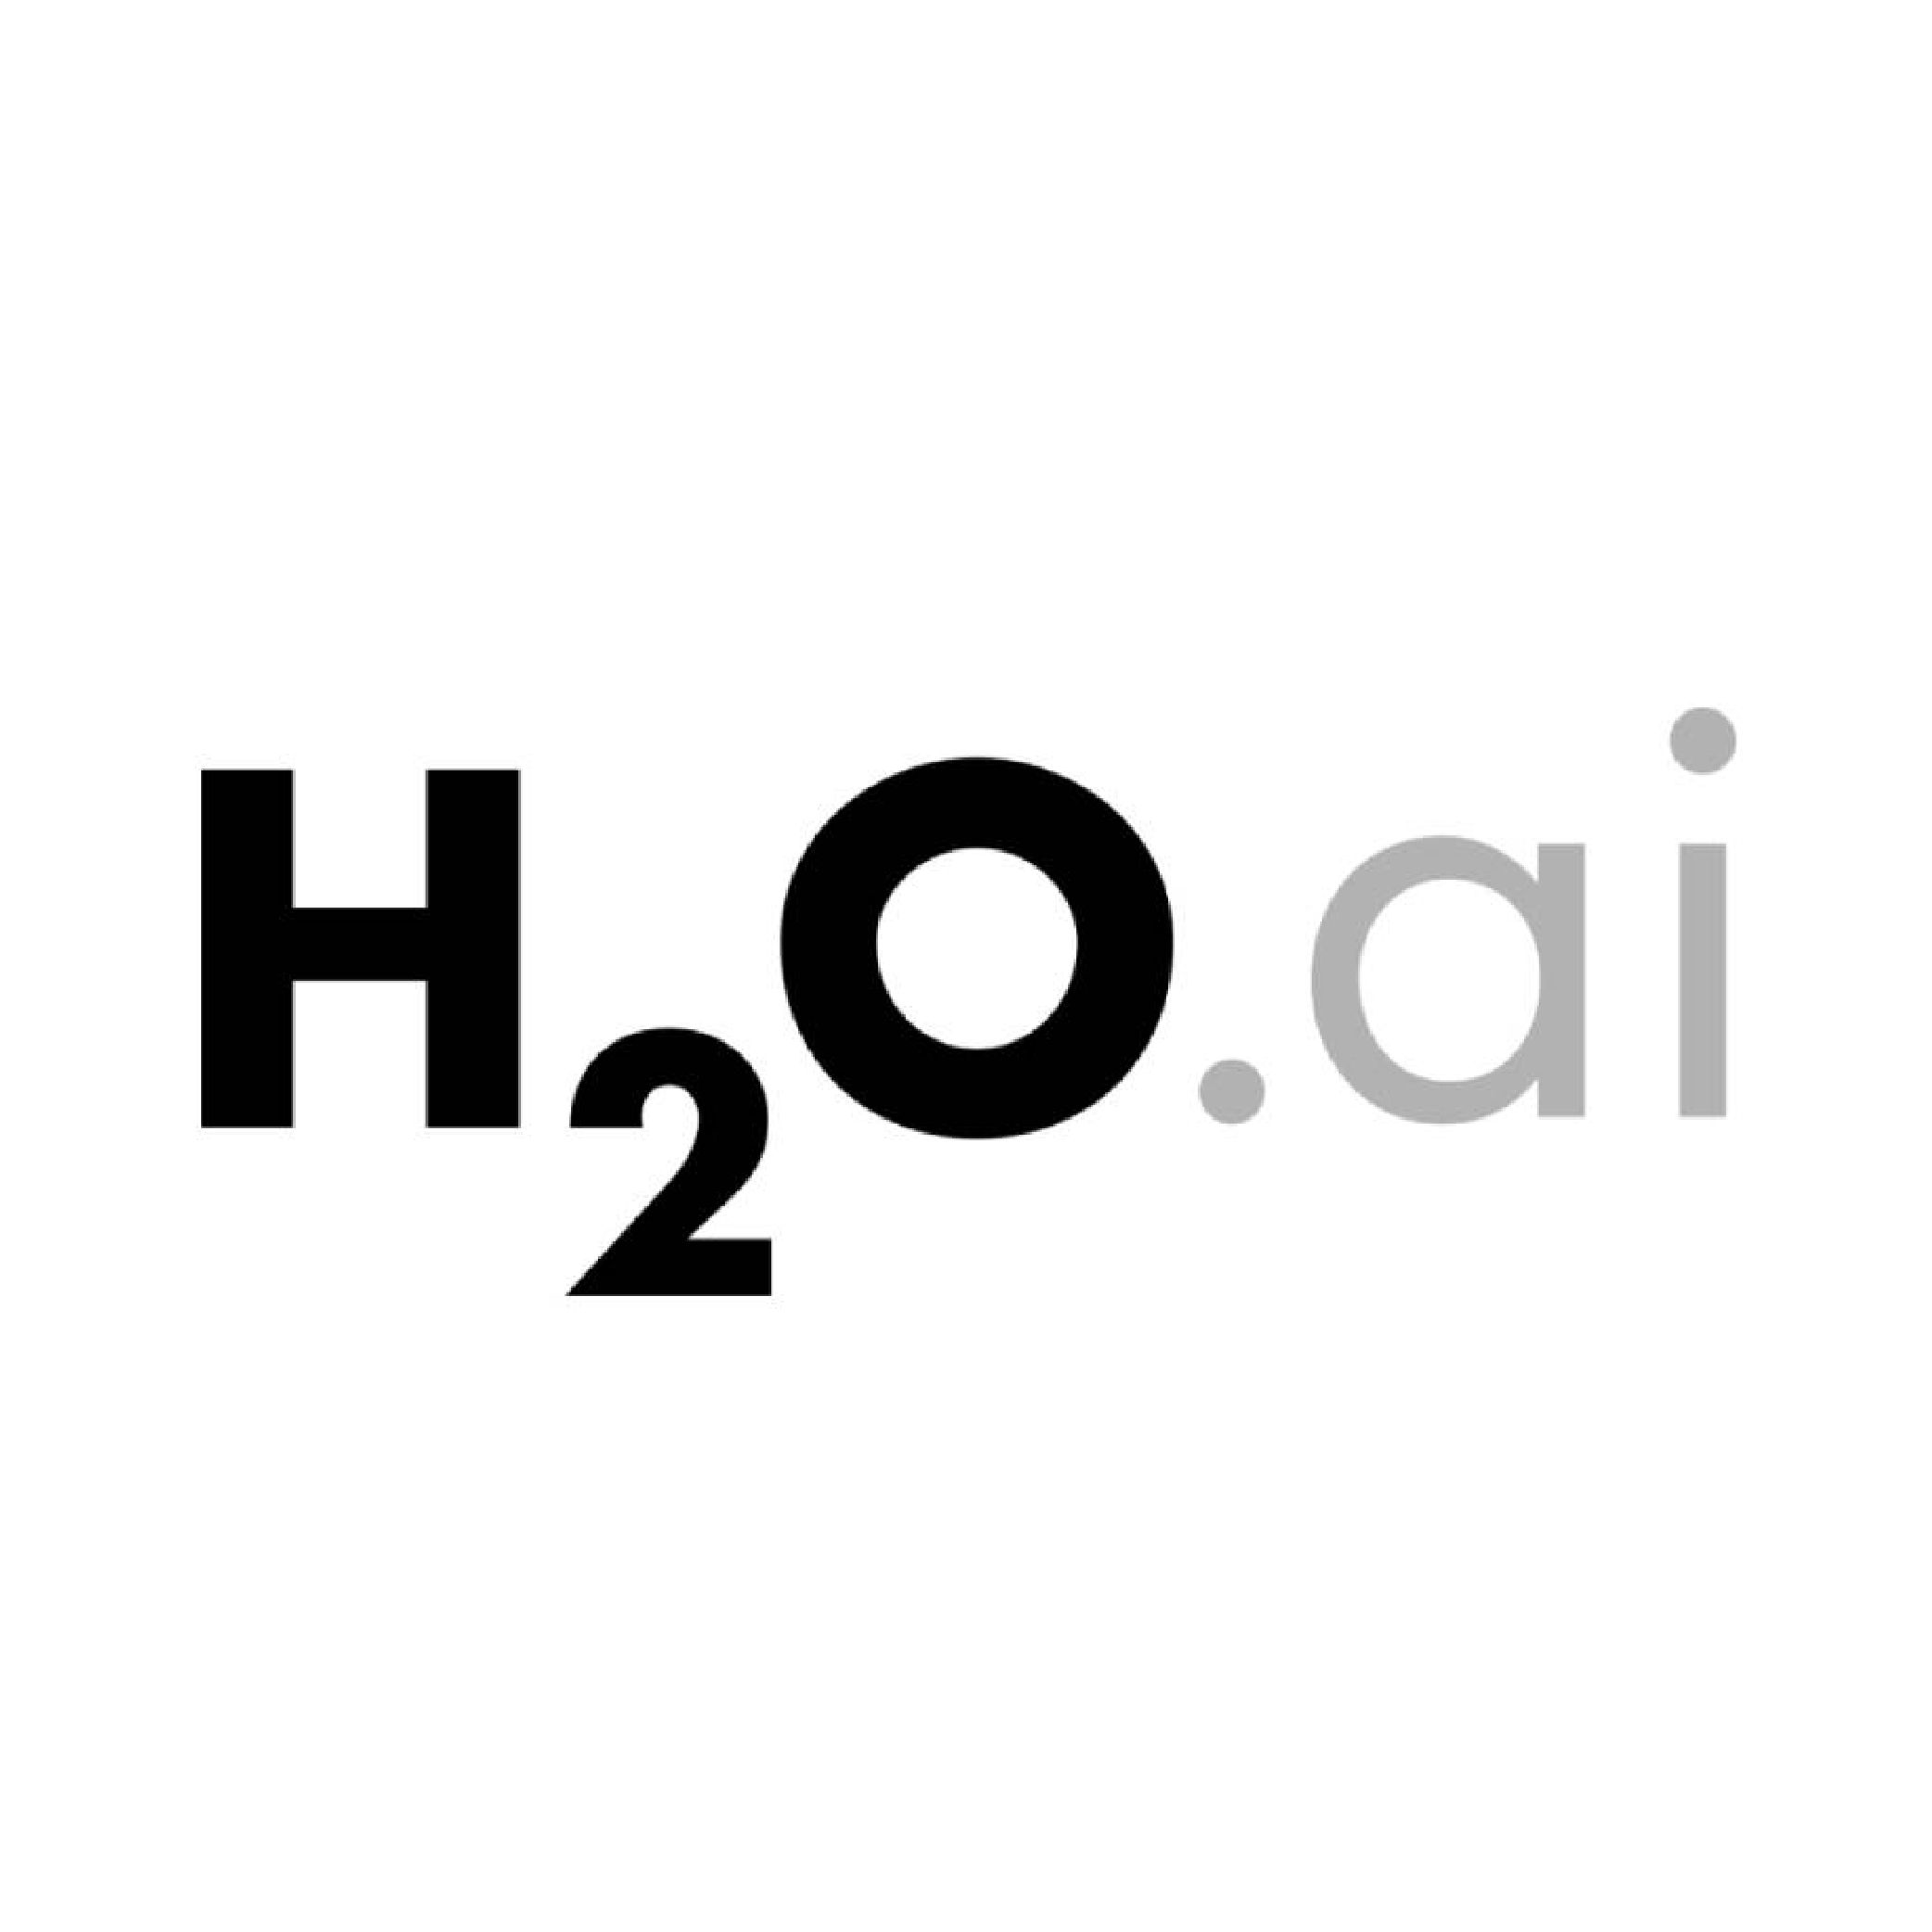 H20.ai